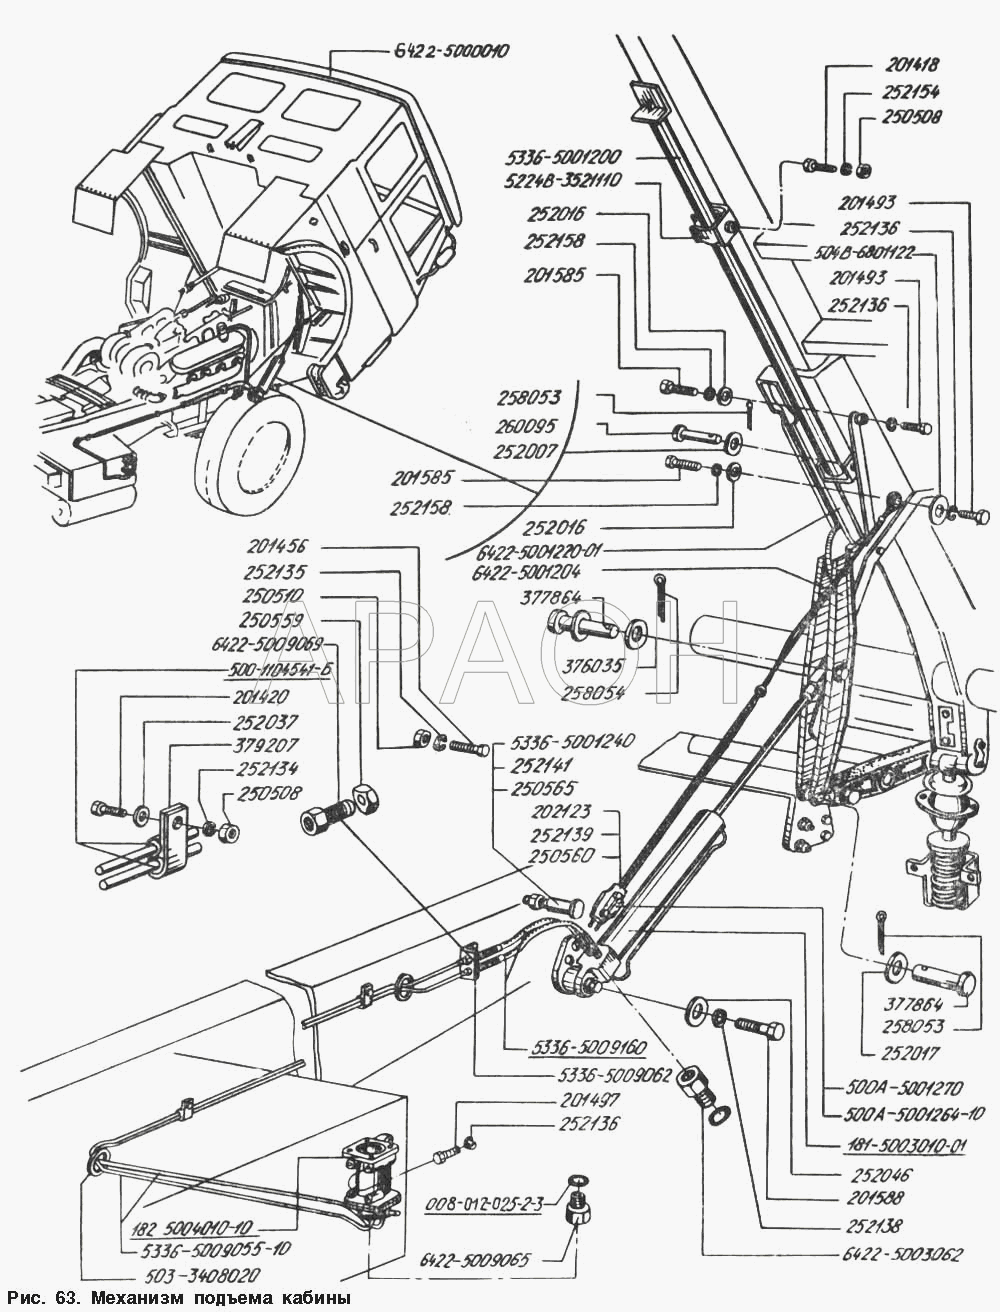 Механизм подъема кабины МАЗ-54328